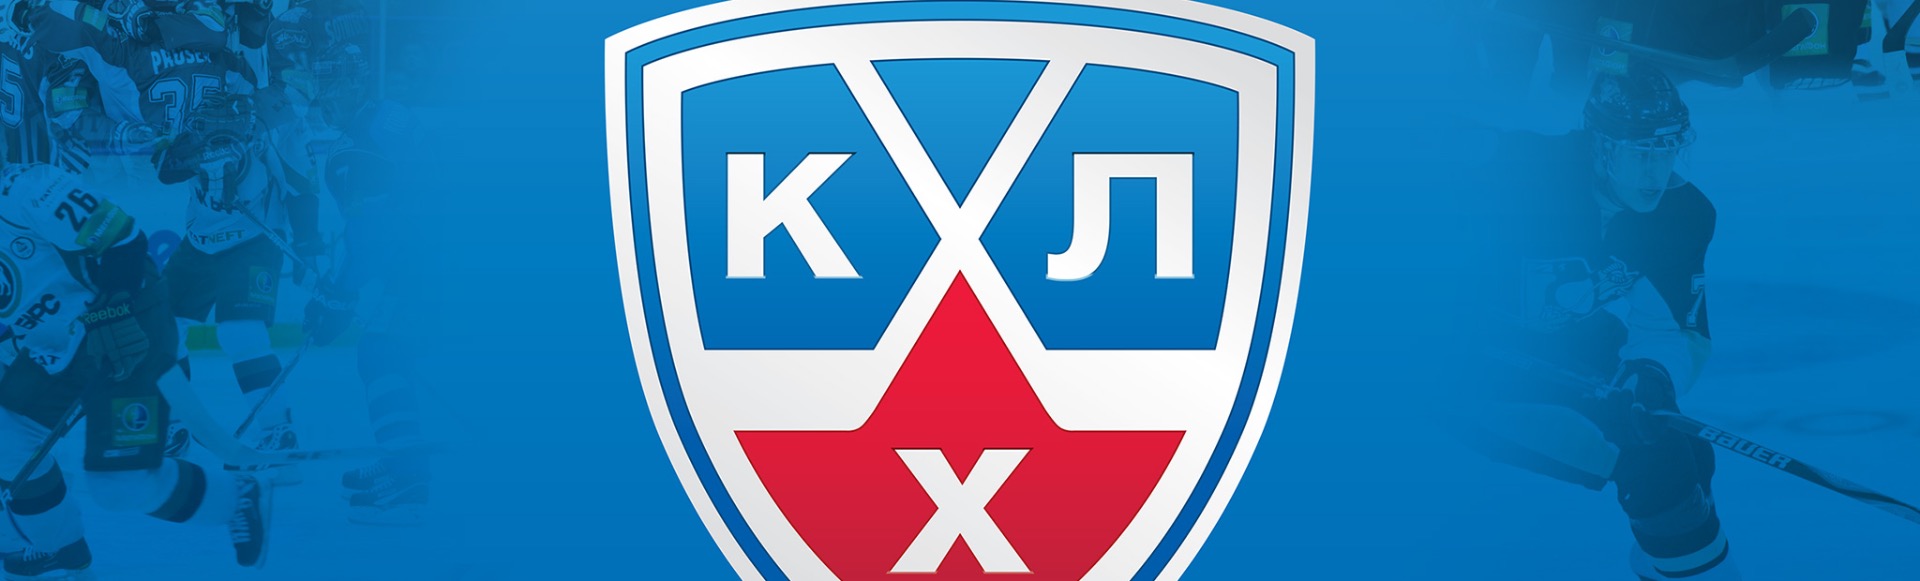 Матч КХЛ Динамо - Северсталь 